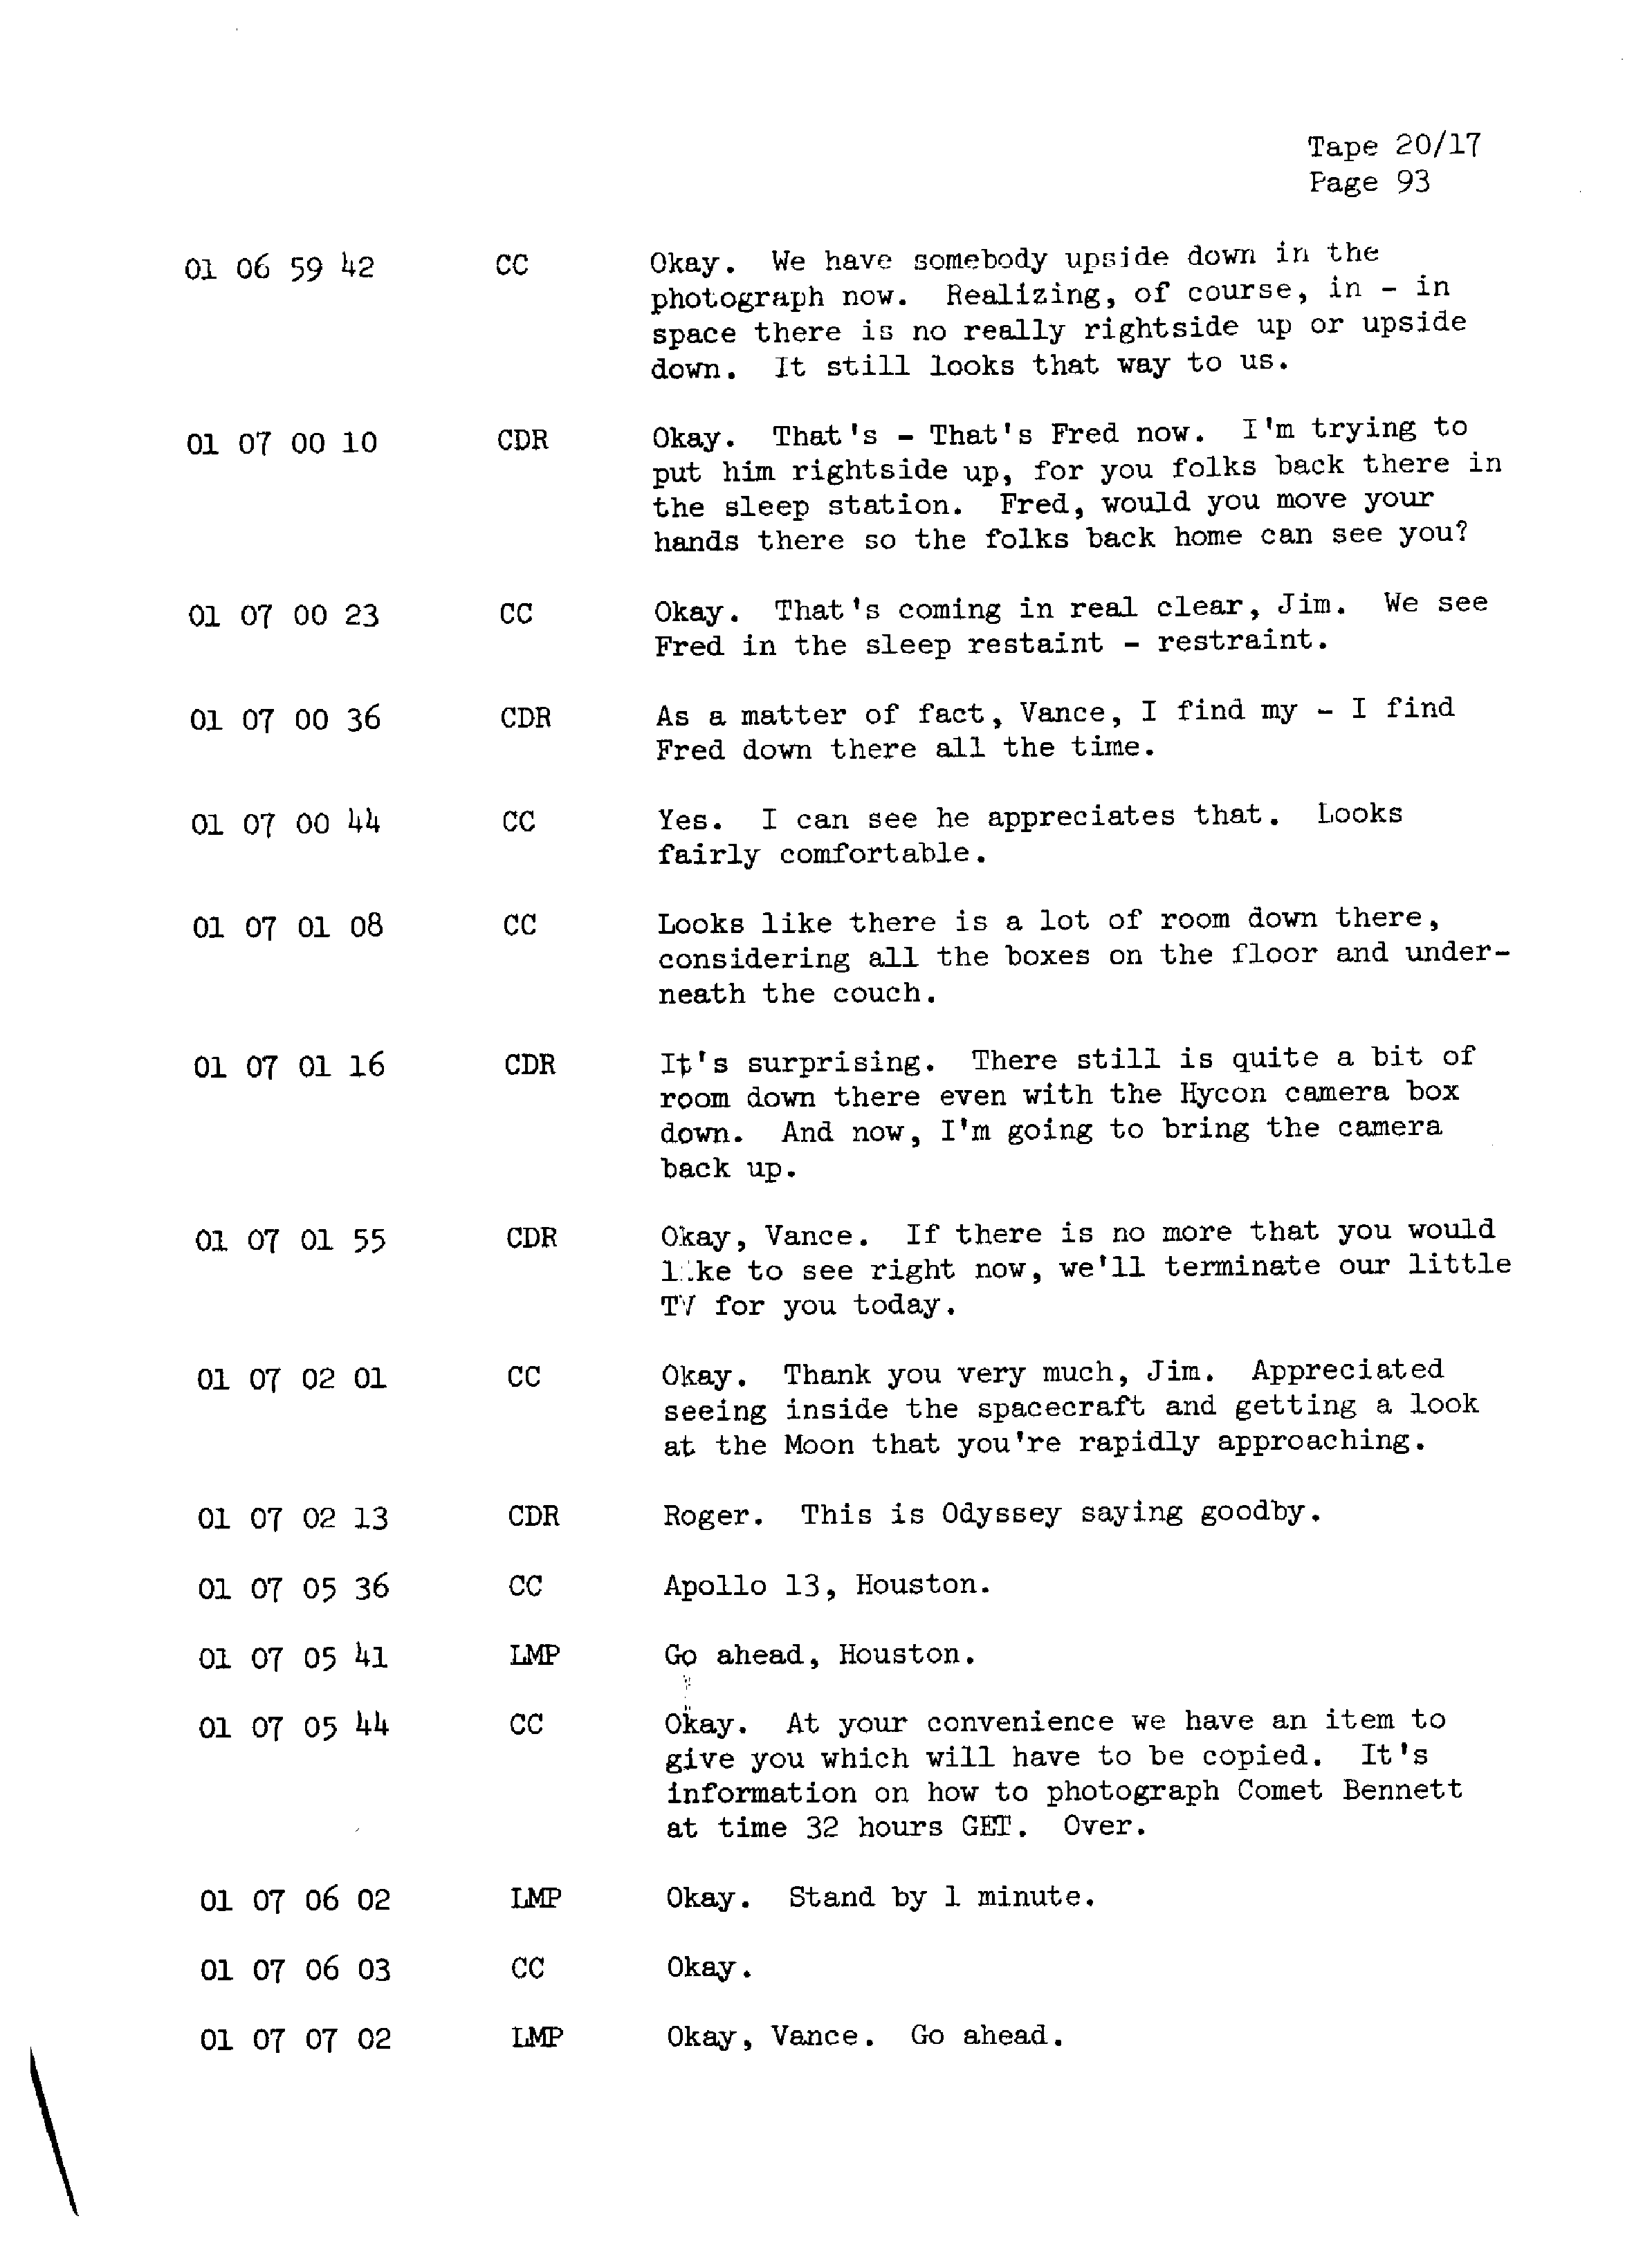 Page 100 of Apollo 13’s original transcript